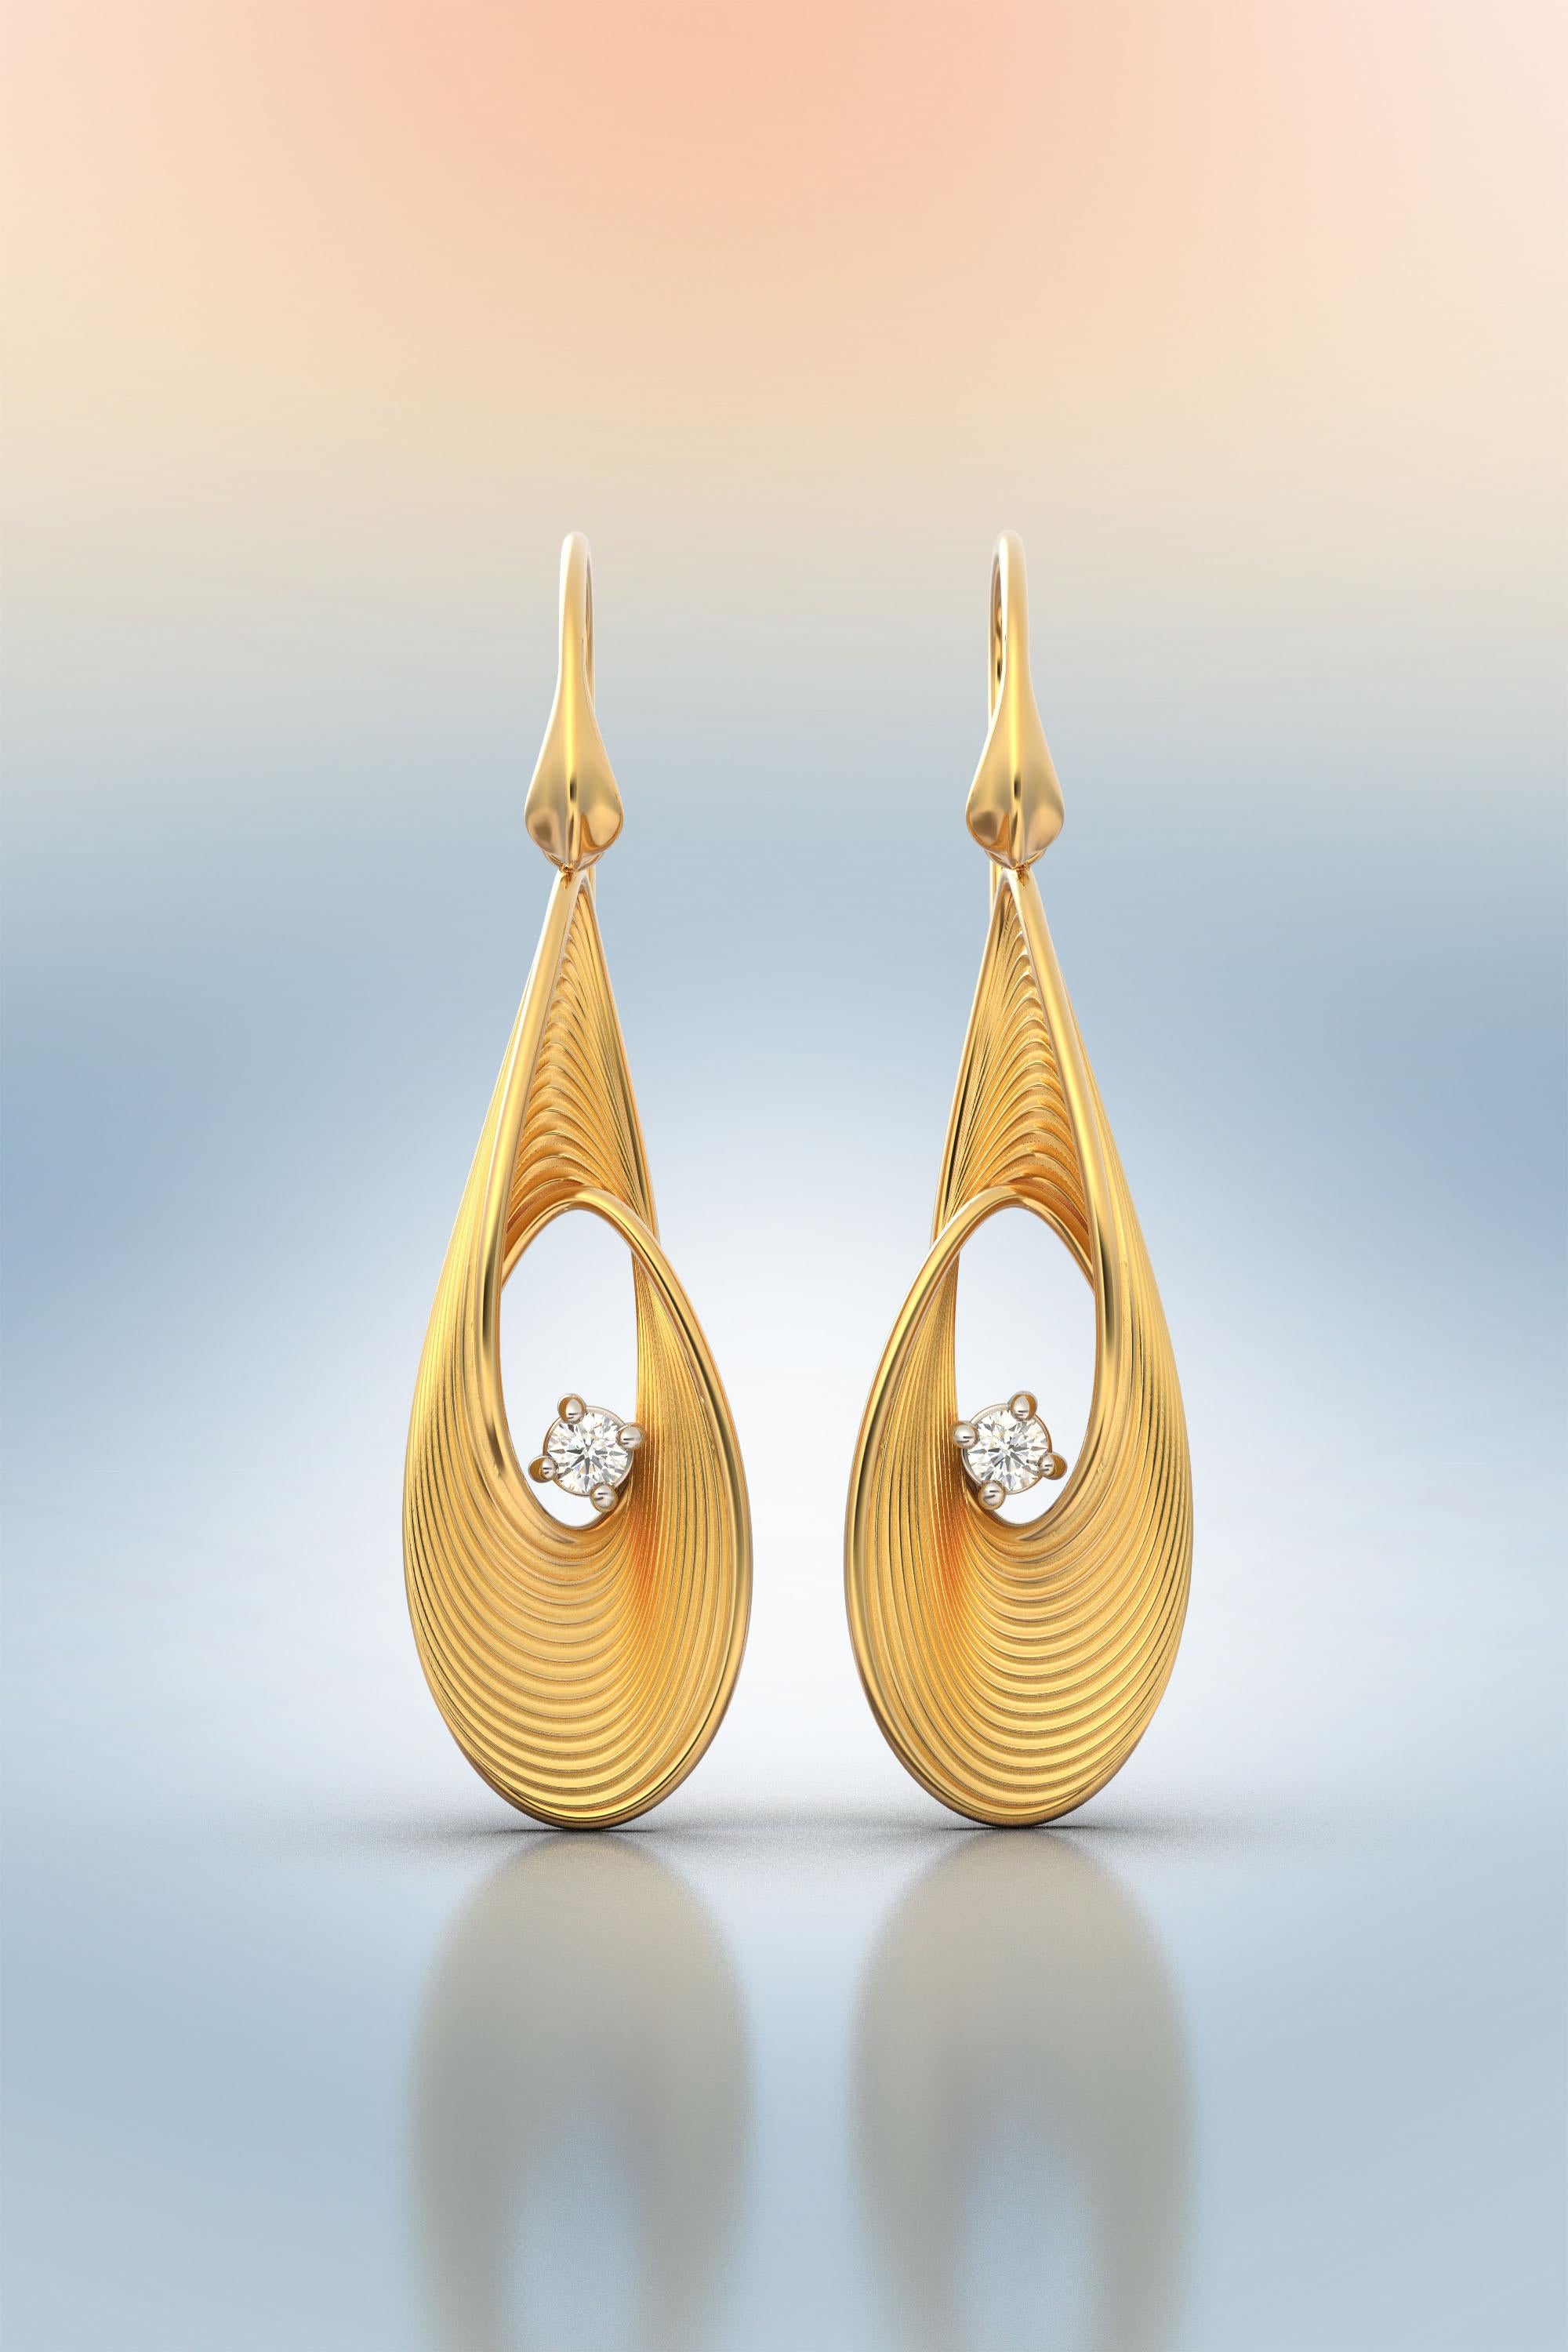 Oltremare Gioielli Diamond Earrings, Dangle Drop Earrings in 18k Solid Gold For Sale 1